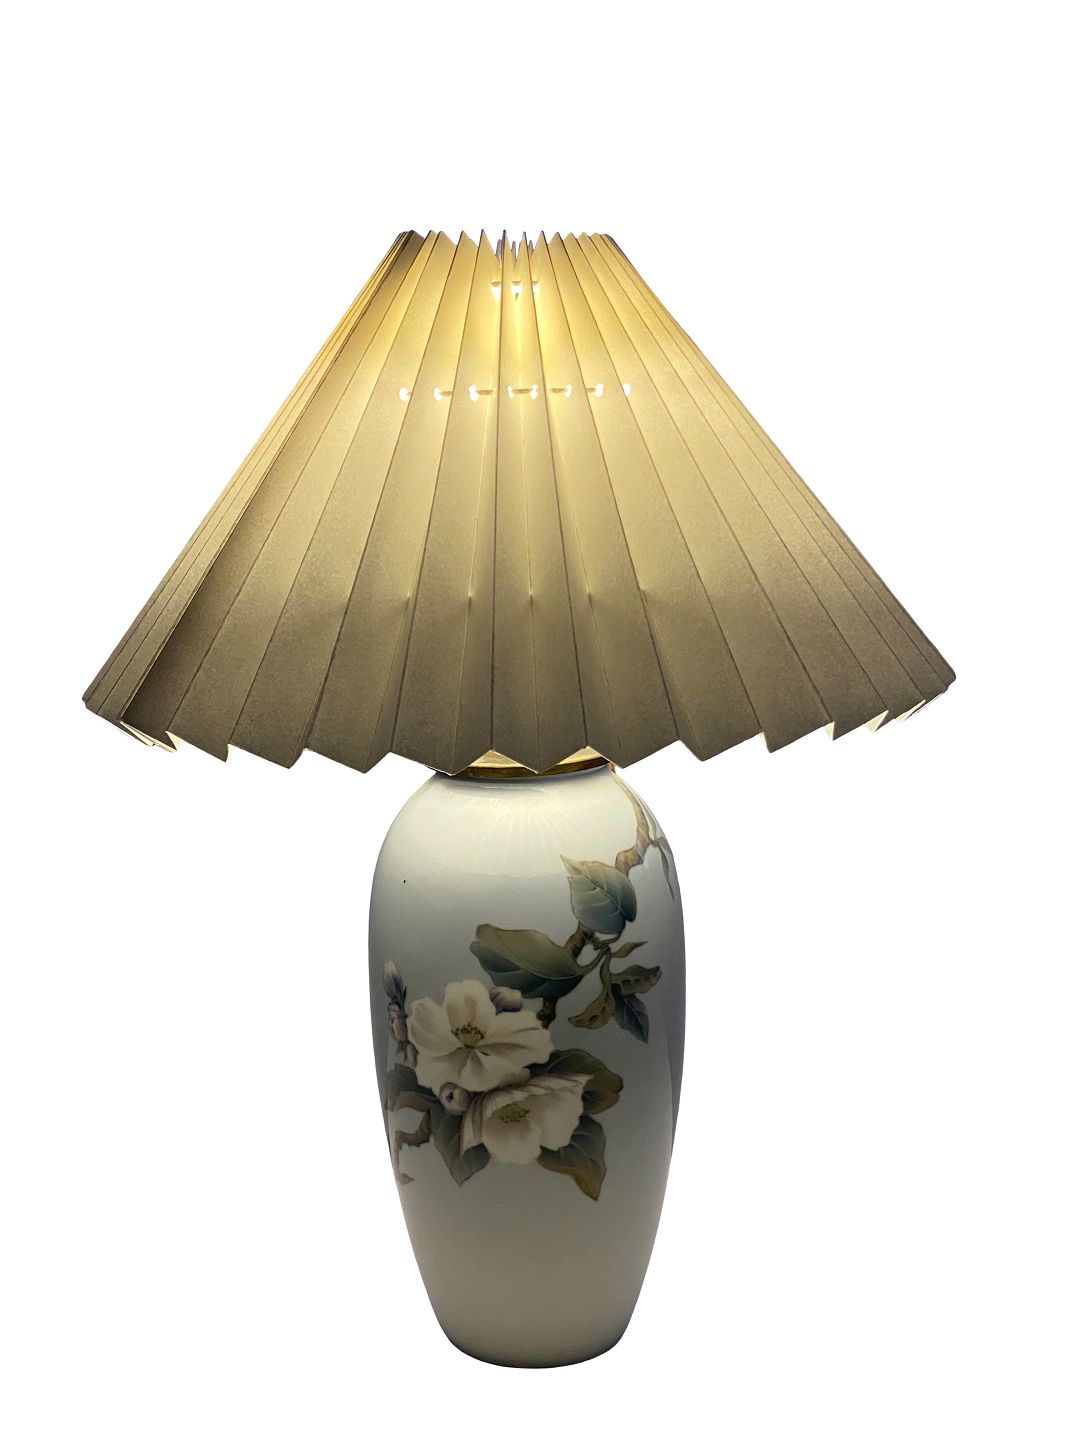 At deaktivere Oprør tilfældig Kgl. porcelæn lampe, nr.: 2655/1224, med blomster motiv og papir skærm. *  5000m2 - Osted Antik & Design